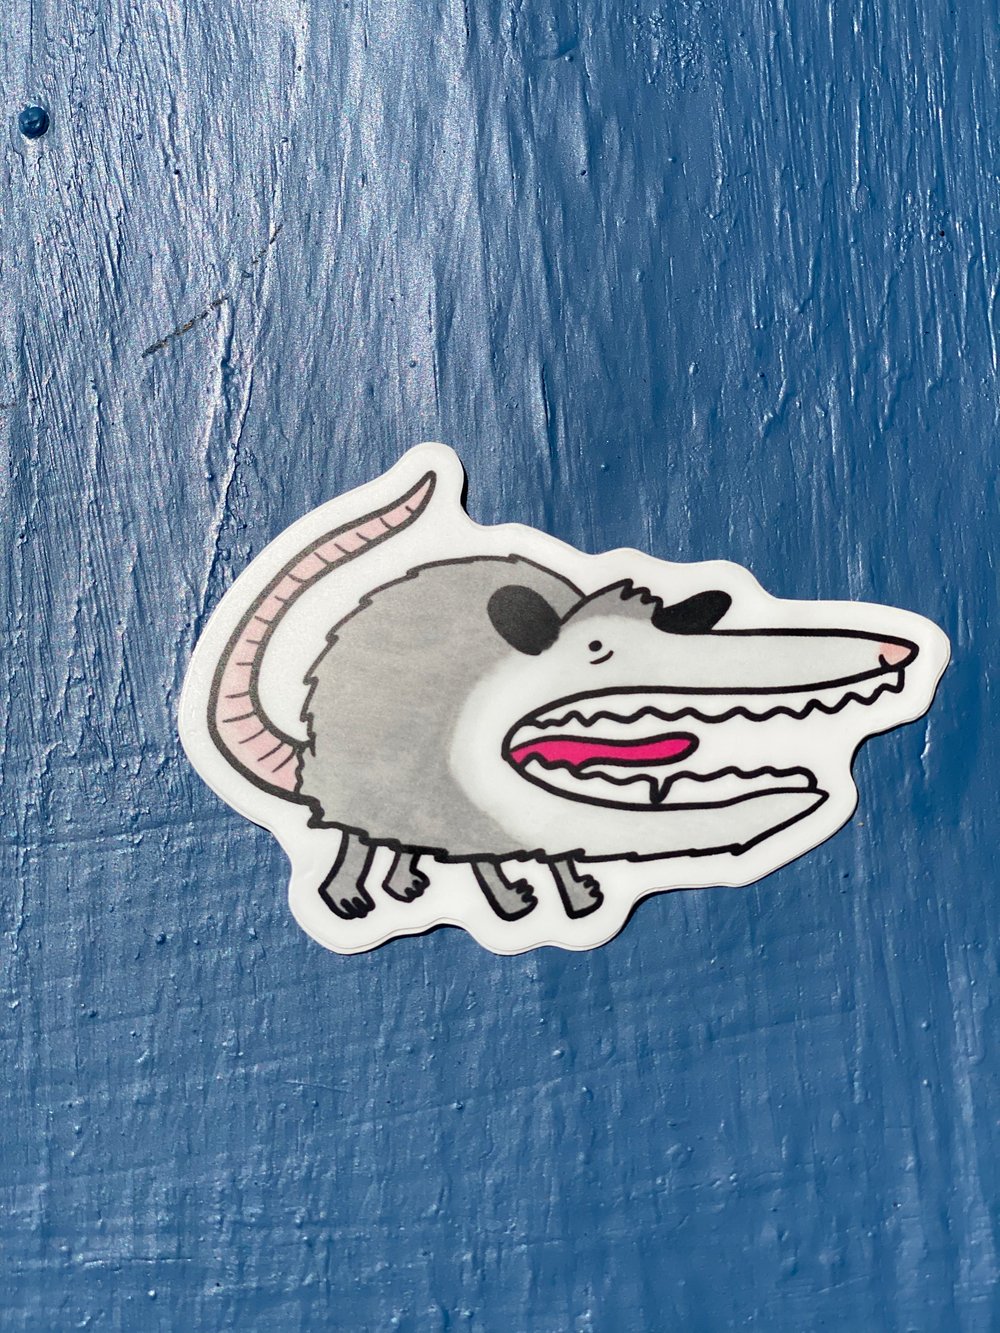 Possum Holler Sticker